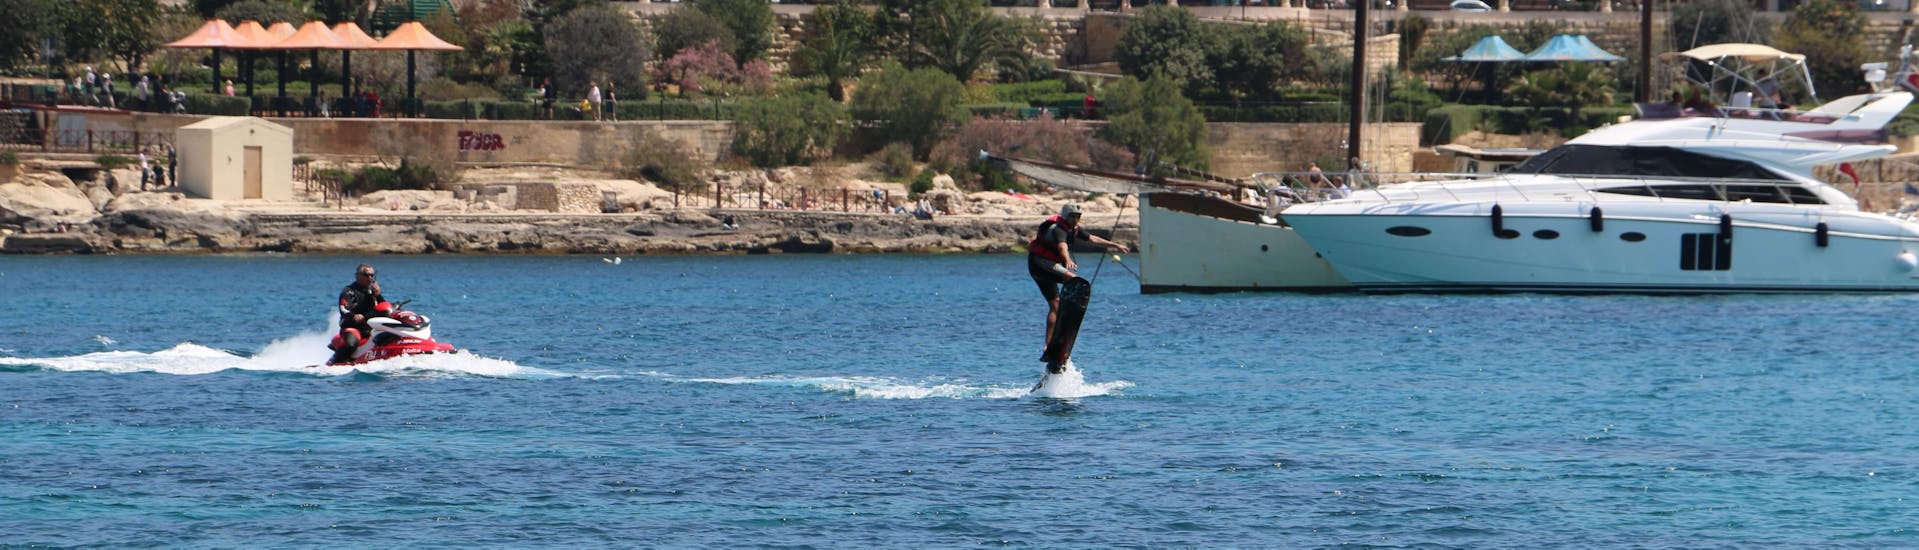 Hoverboard nella spiaggia di Spinola Bay.